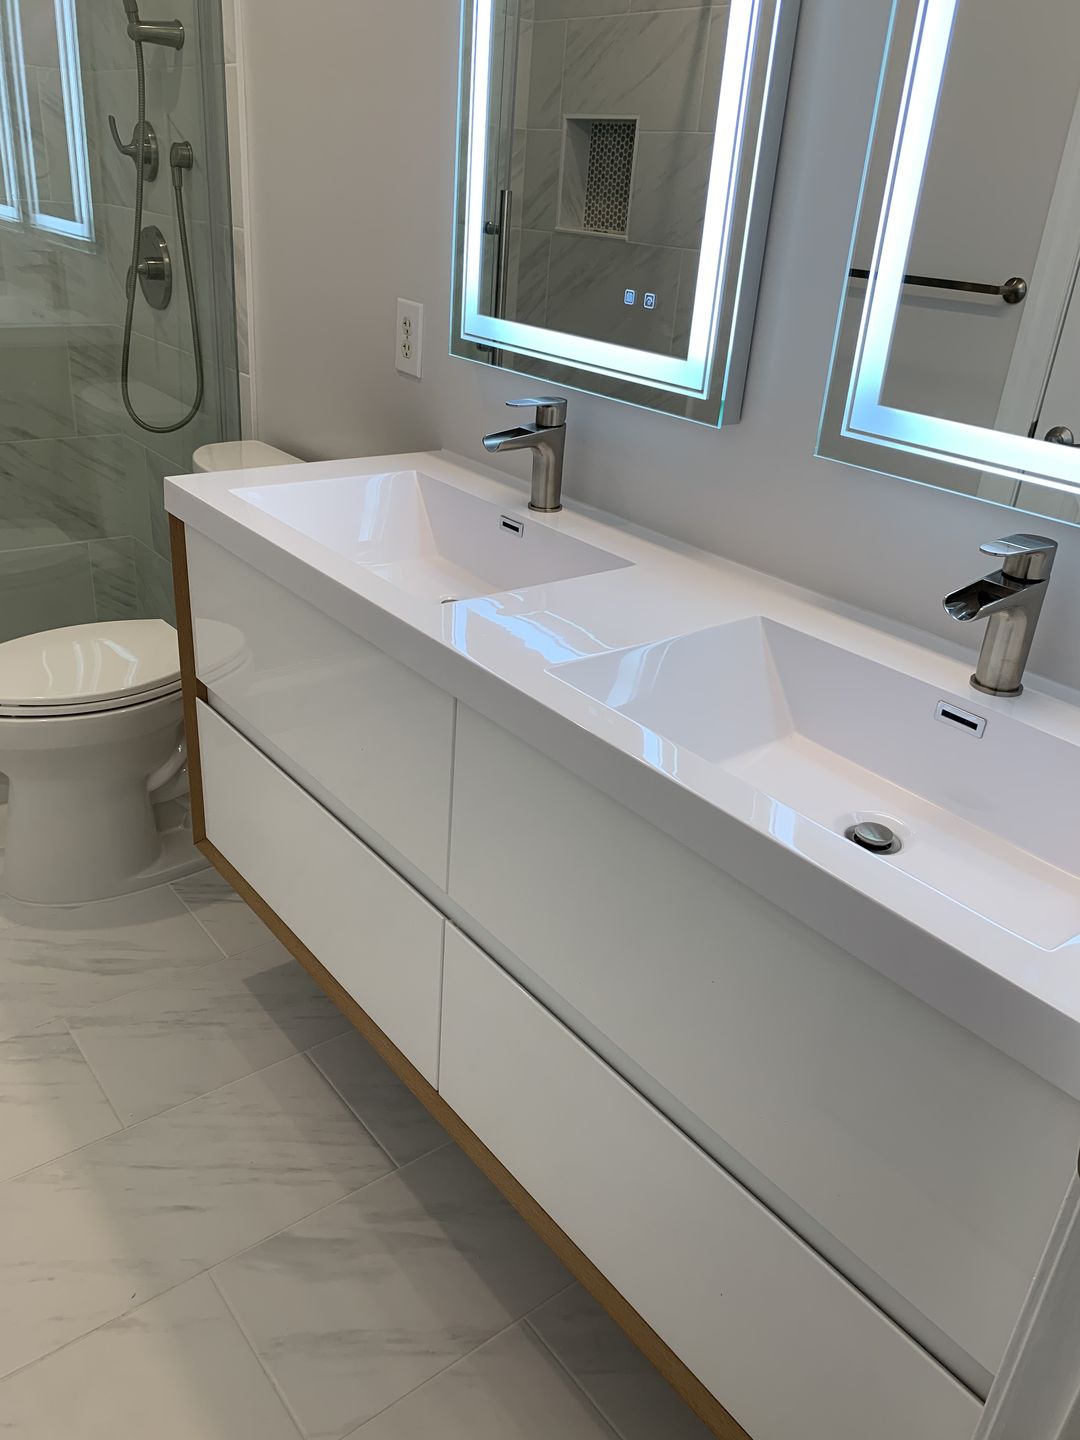 Kingdee 60" Inch Double Sink Bathroom Vanity in Gloss White | Moreno Bath Modern Bathroom Vanities